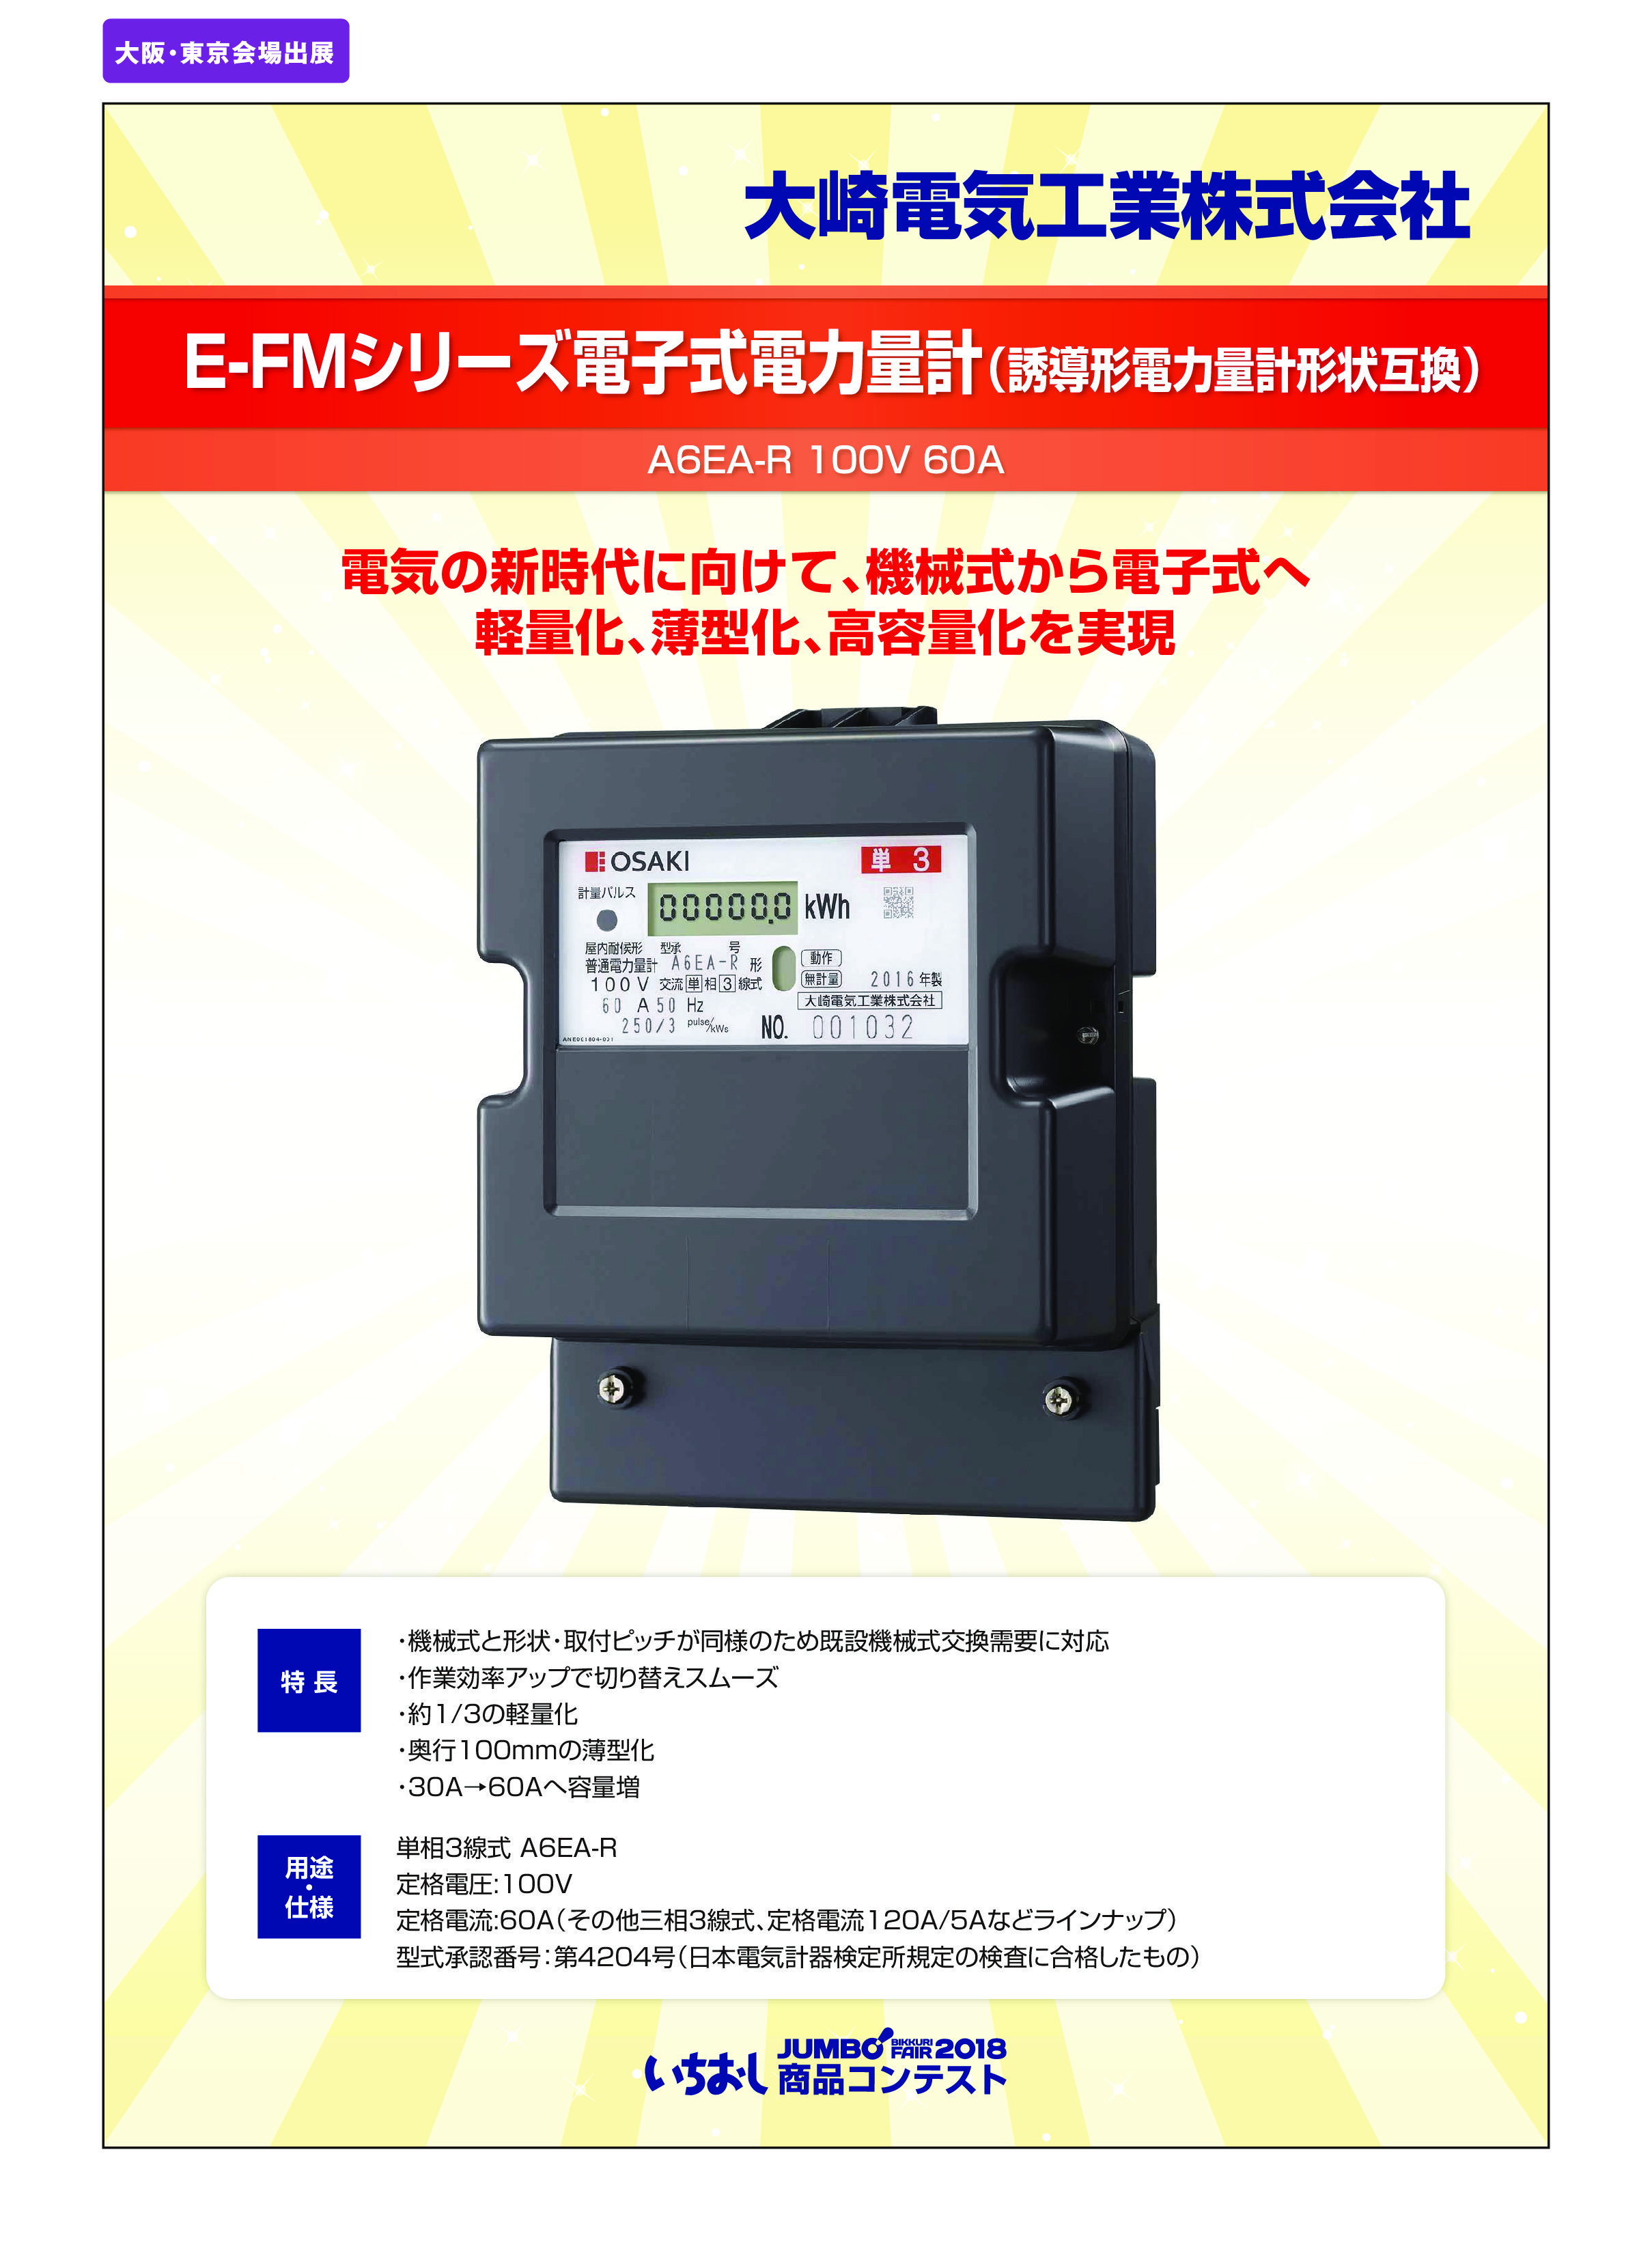 「E-FMシリーズ電子式電力量計（誘導形電力量計形状互換）」大崎電気工業株式会社の画像